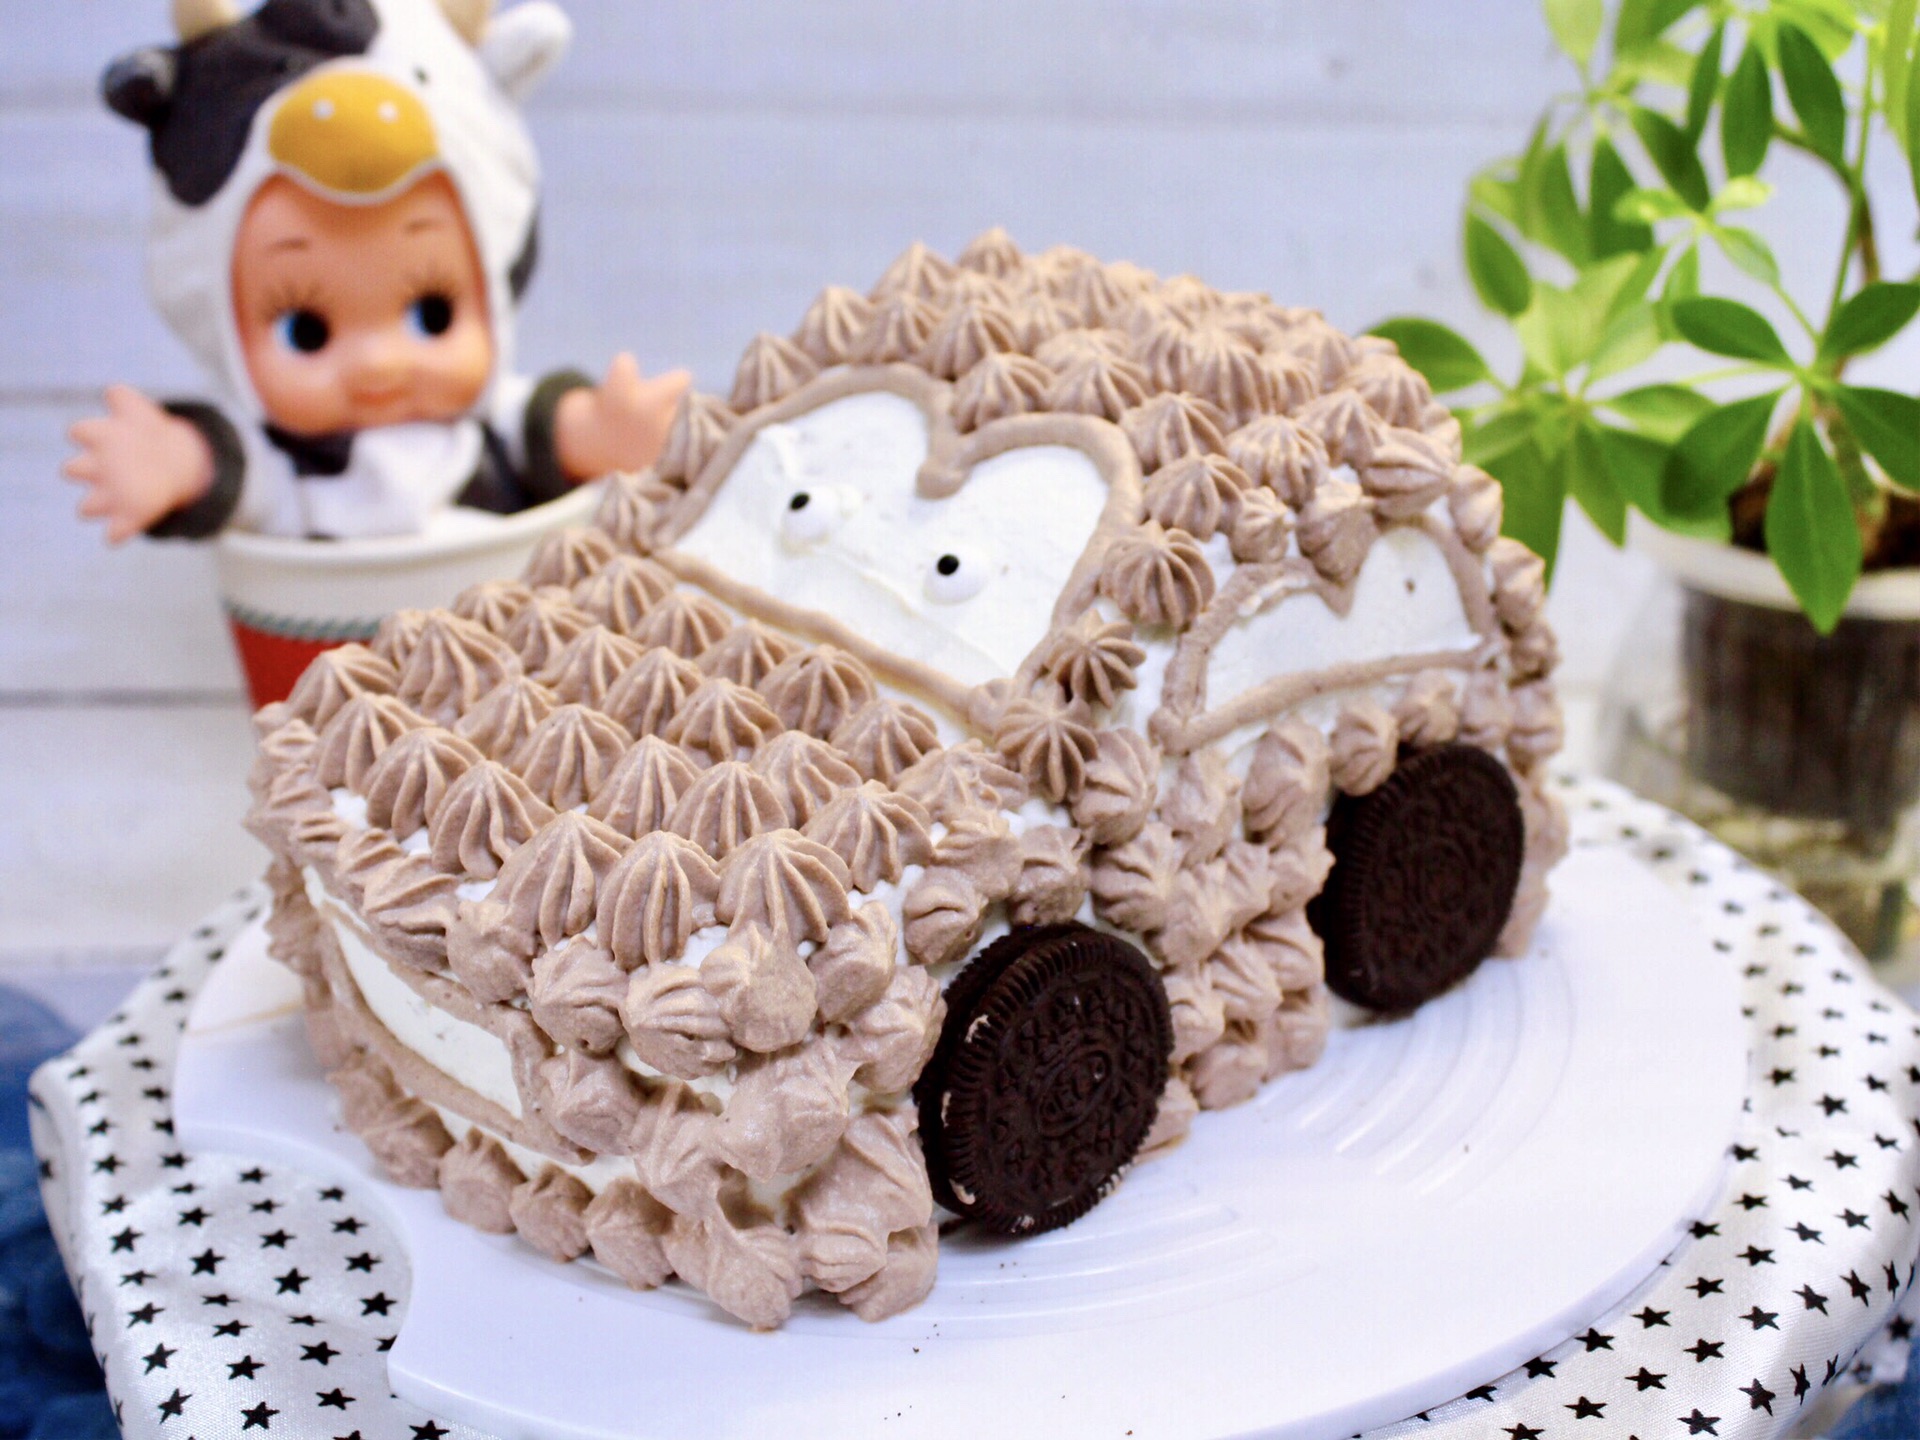 汽车造型鲜奶蛋糕的做法_汽车造型鲜奶蛋糕怎么做_汽车造型鲜奶蛋糕的家常做法_Archeboy【心食谱】